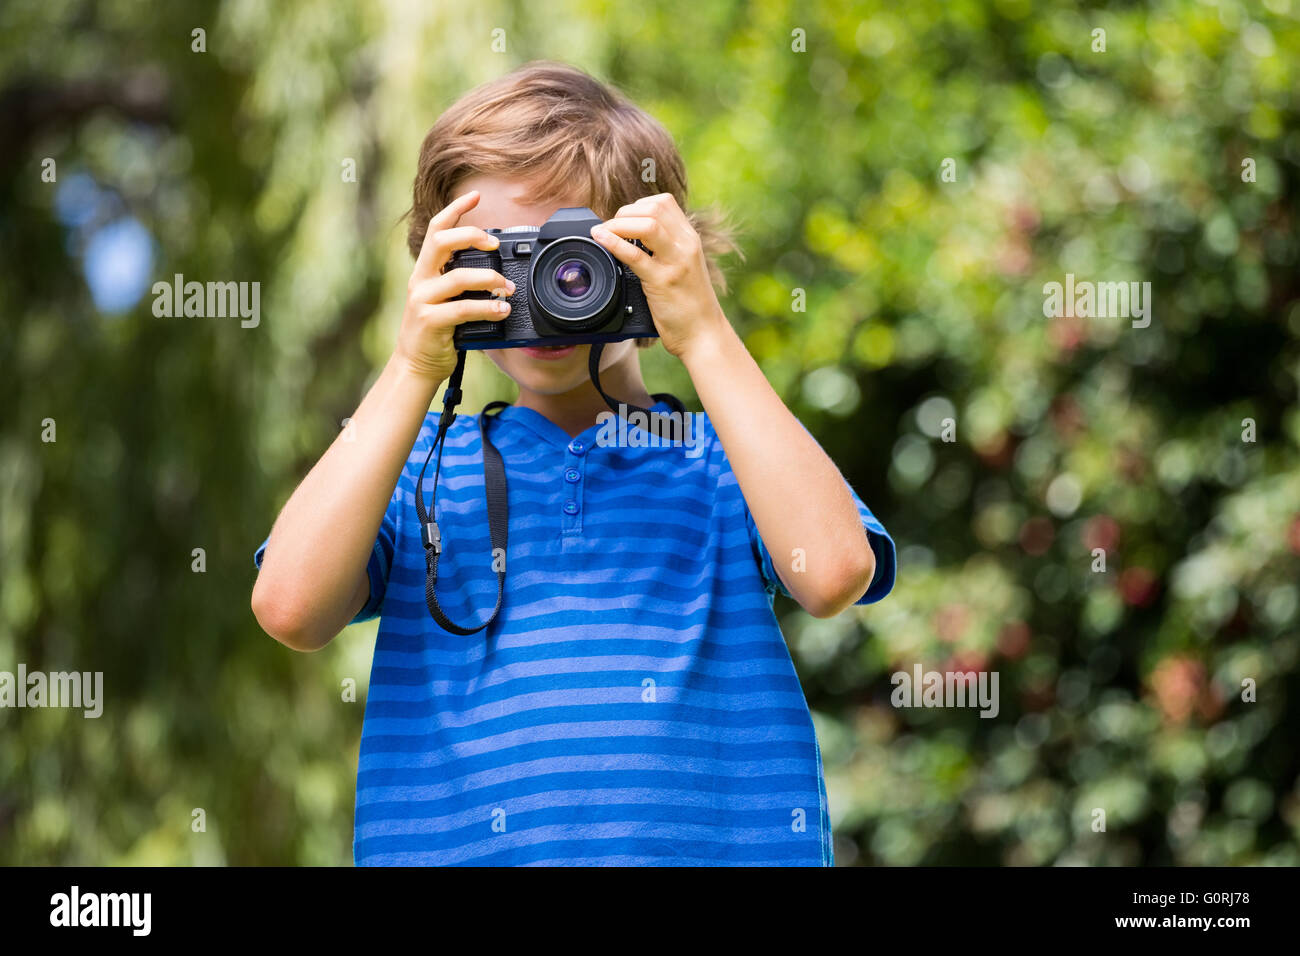 Portrait de jeune garçon en prenant une photo face à l'appareil photo Banque D'Images